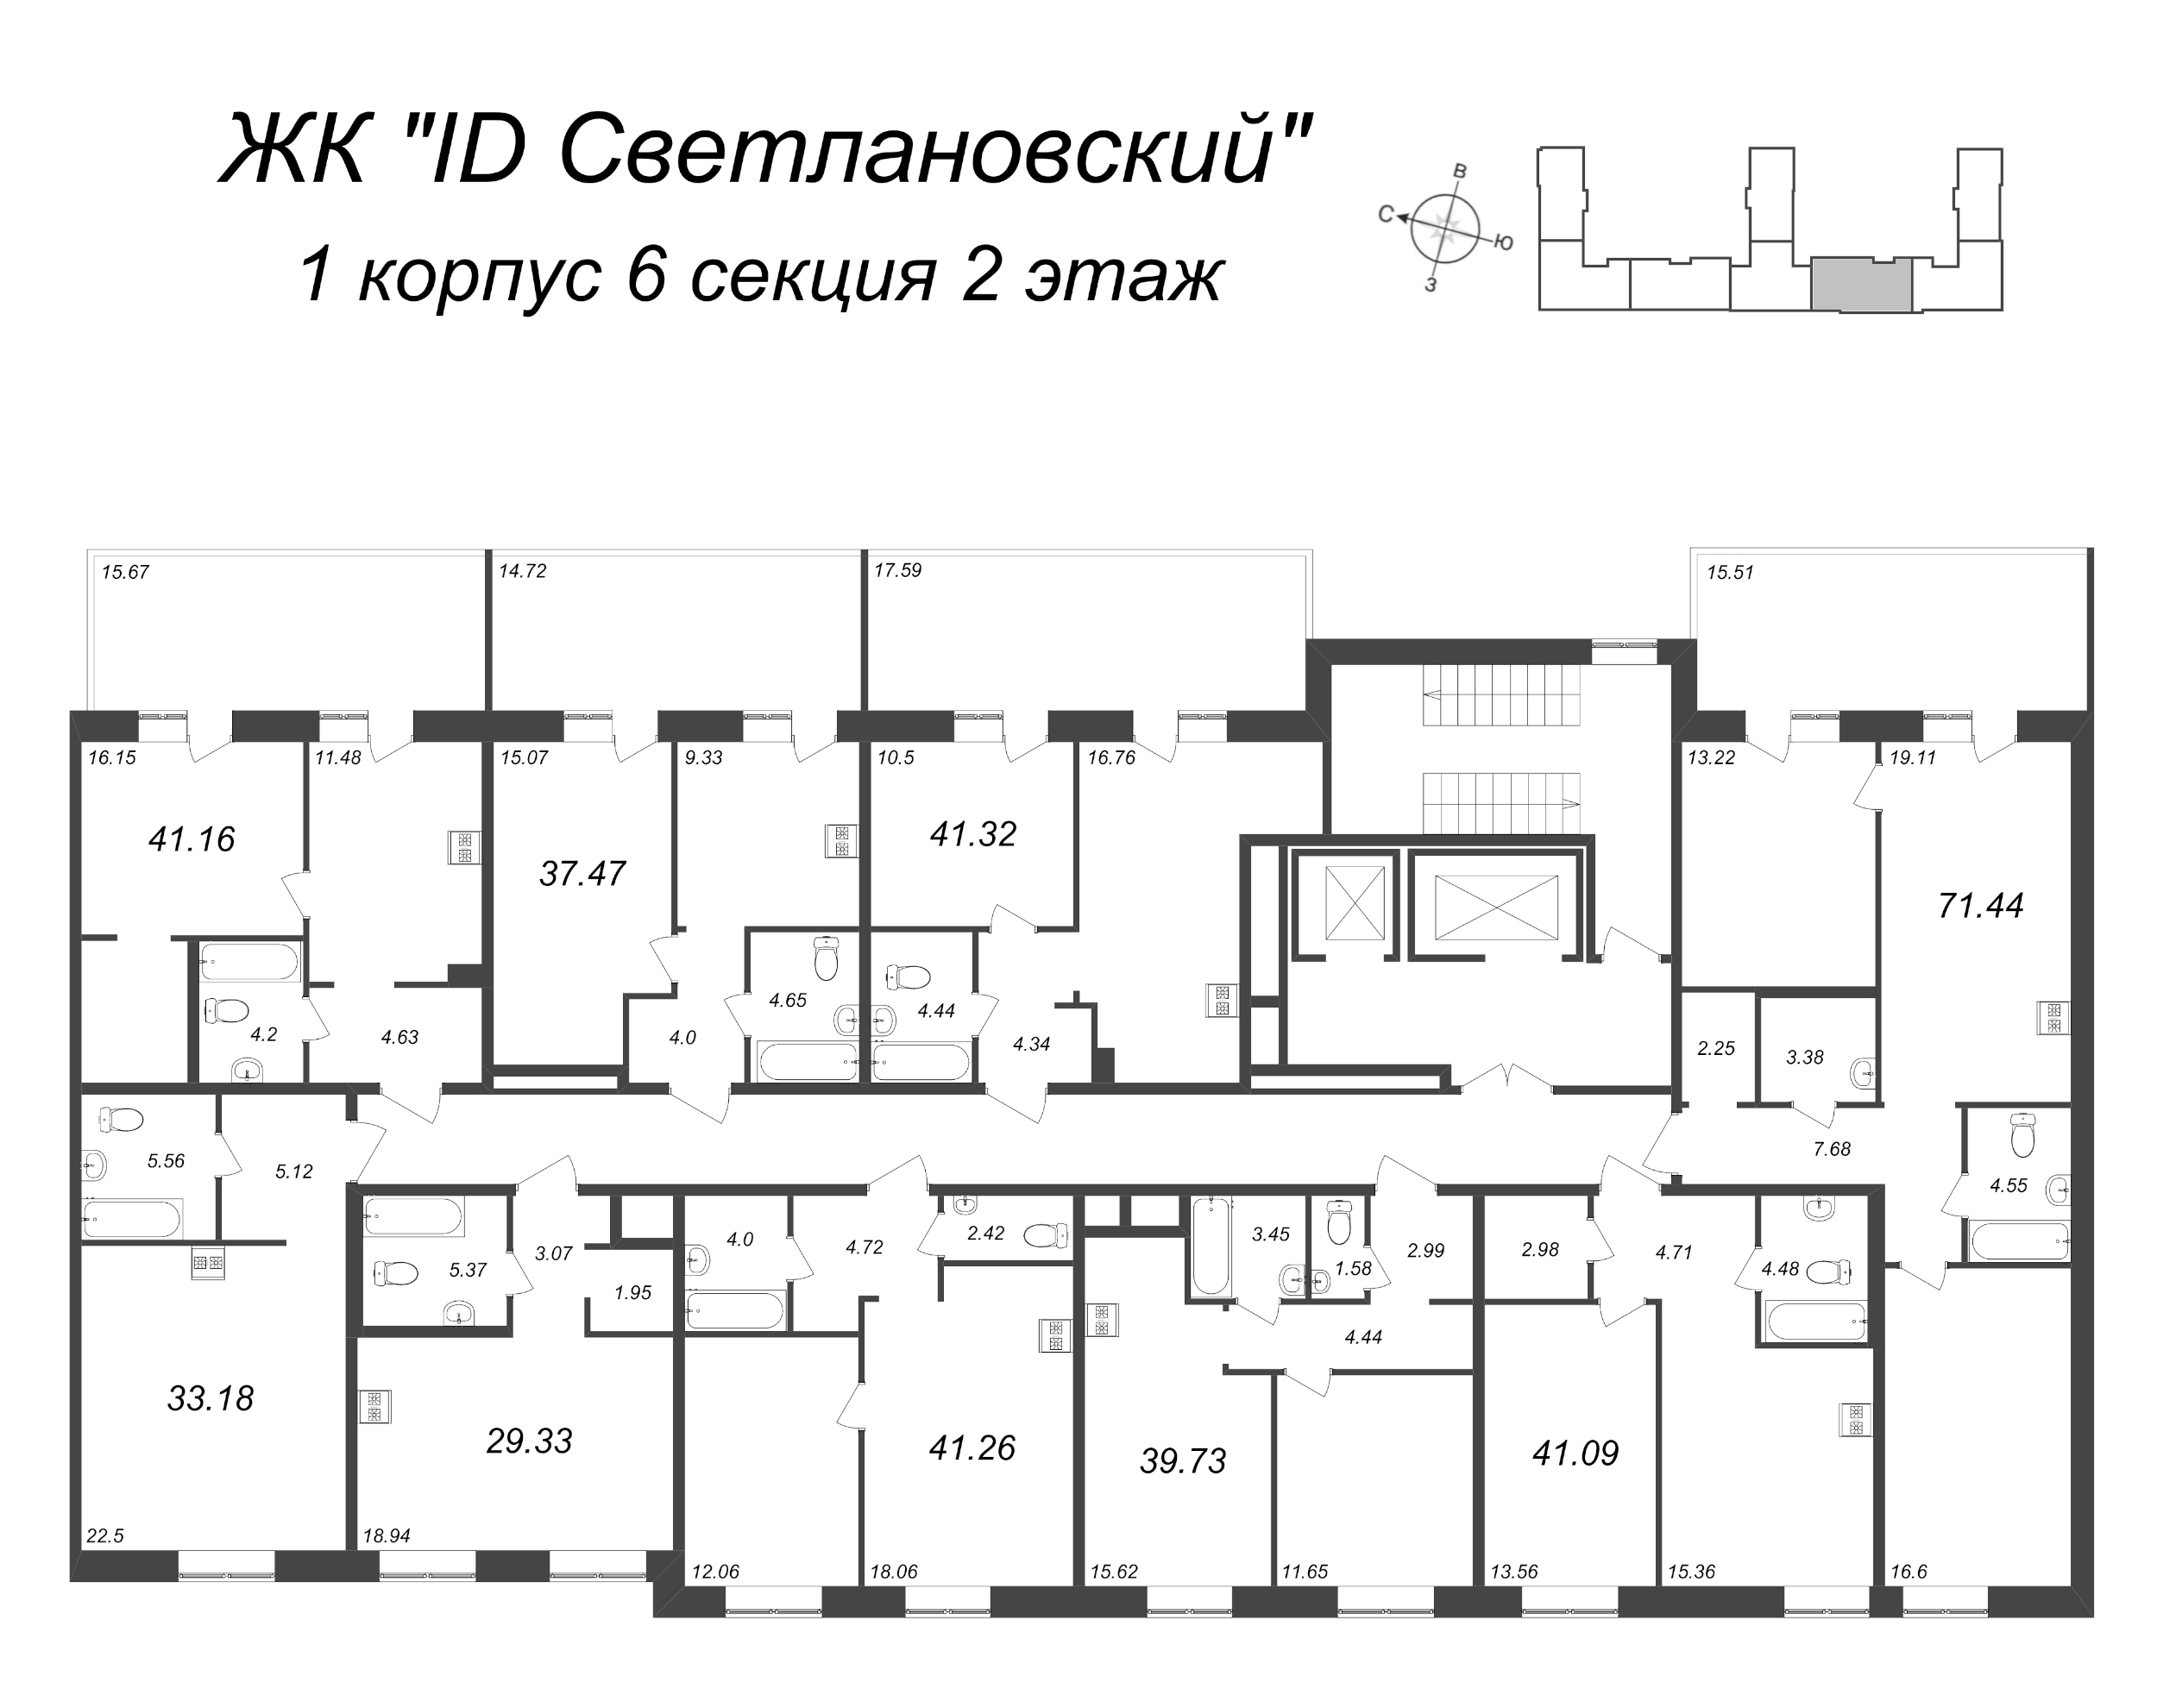 Квартира-студия, 33.18 м² в ЖК "ID Svetlanovskiy" - планировка этажа